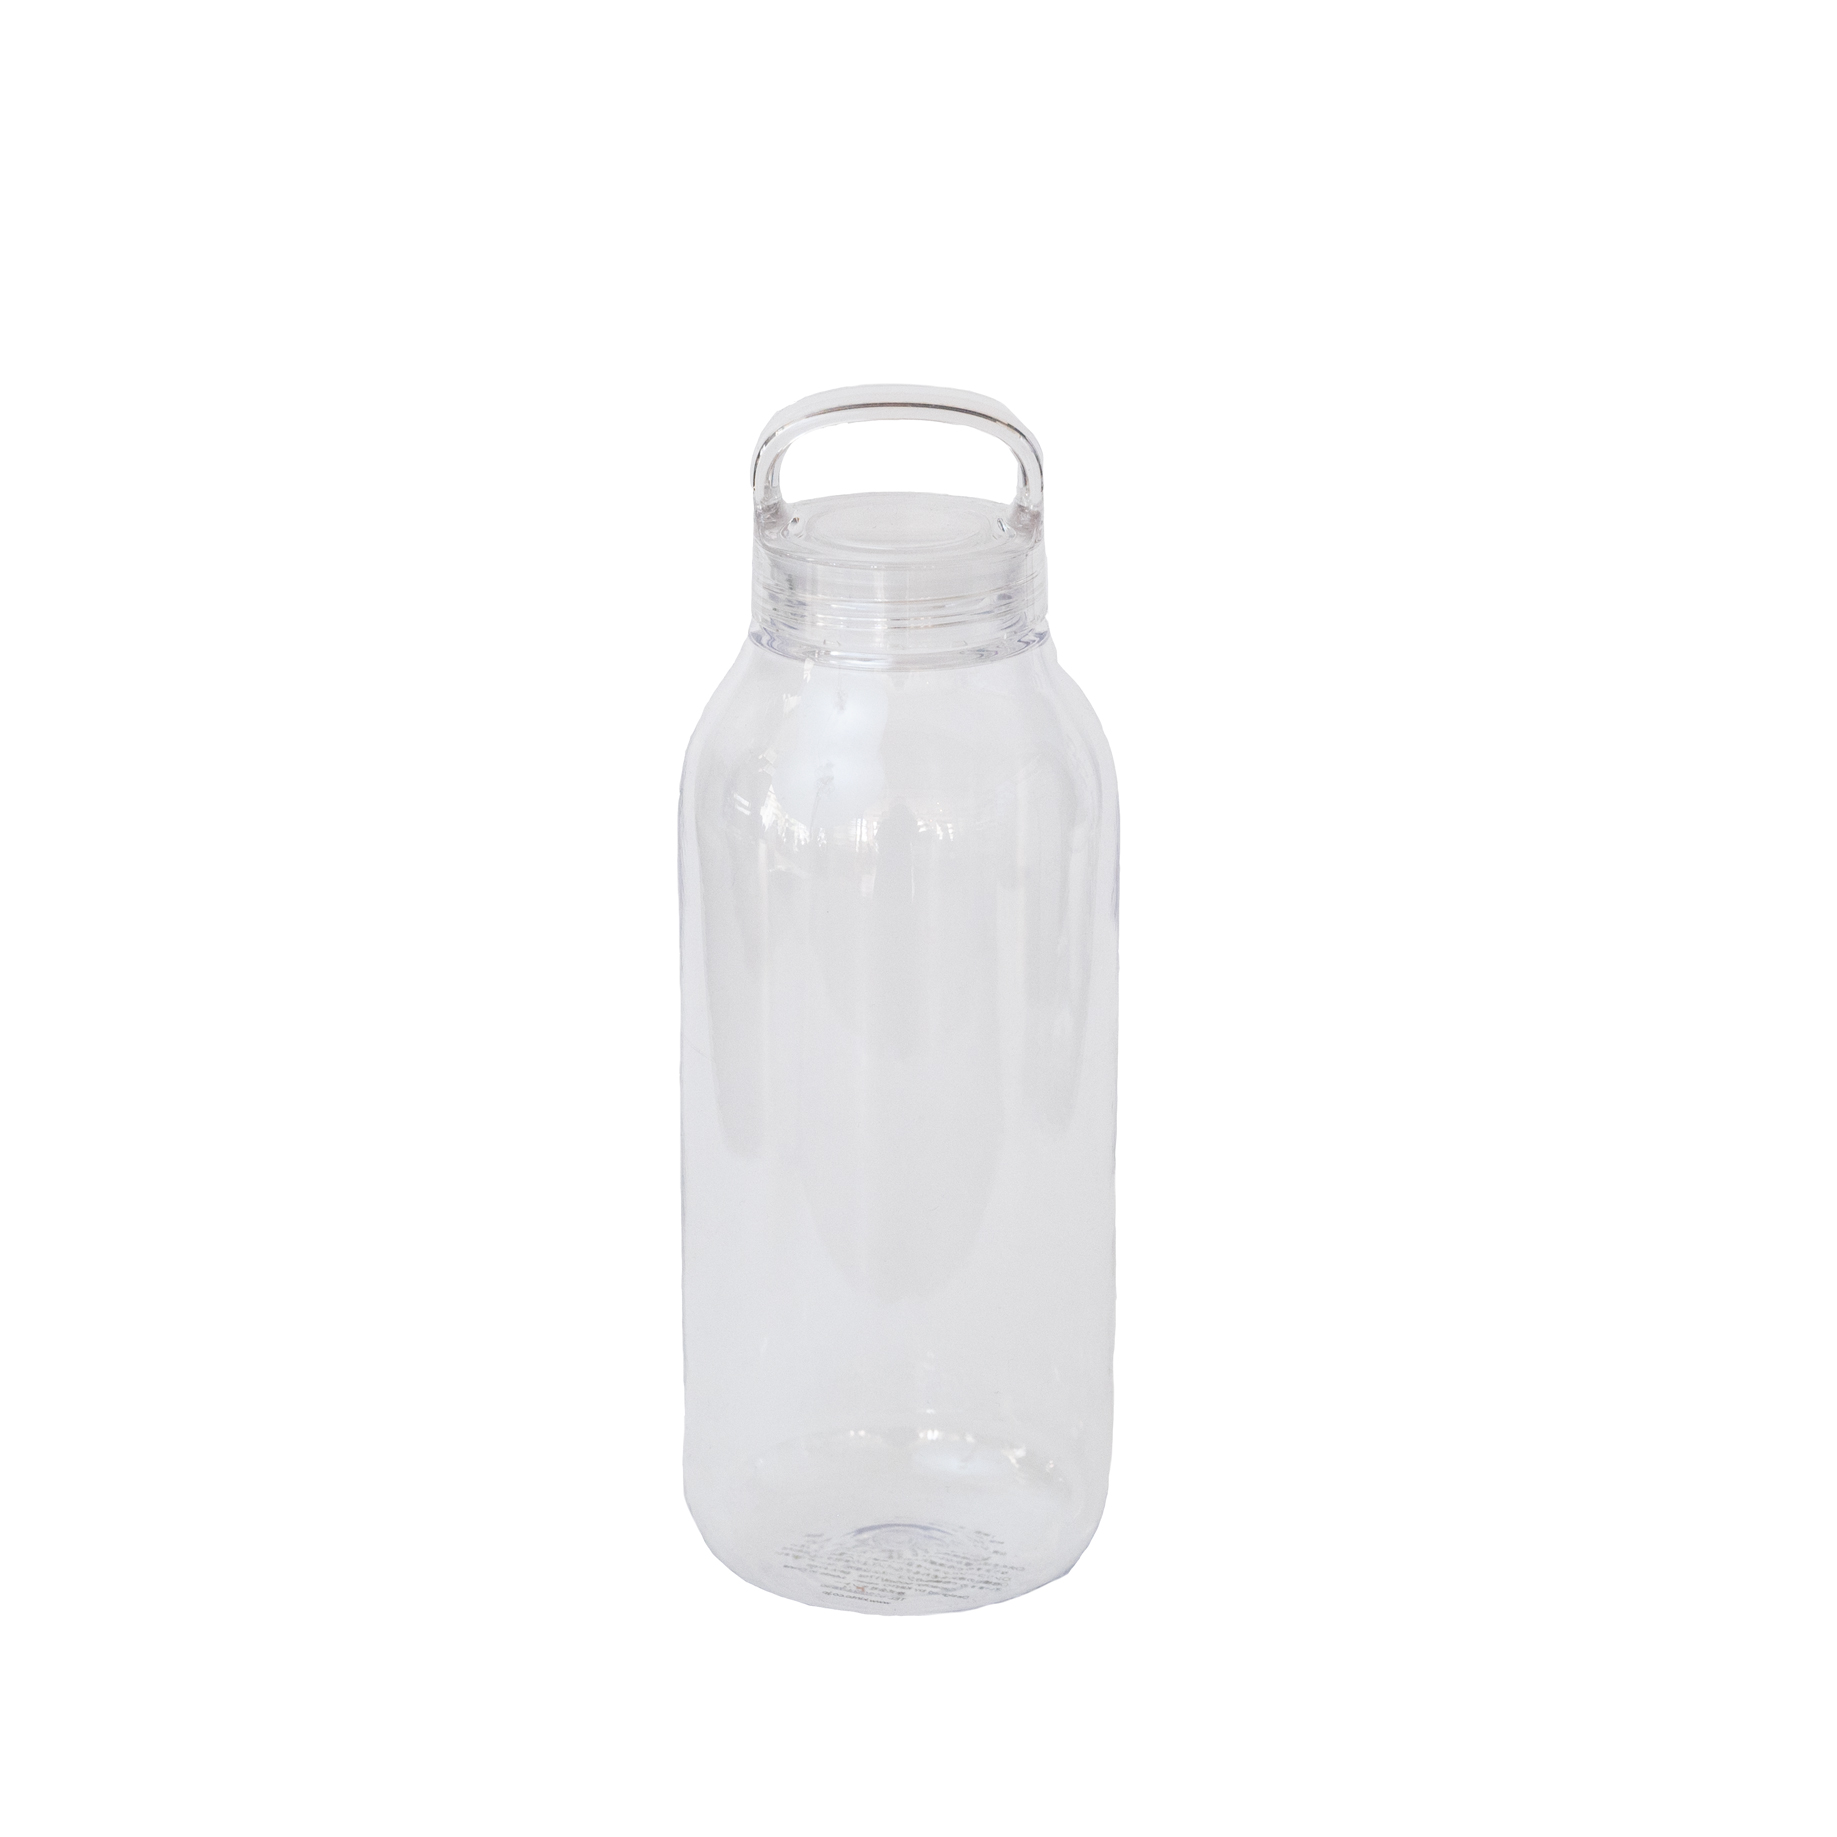 Water bottle 17oz/500ml